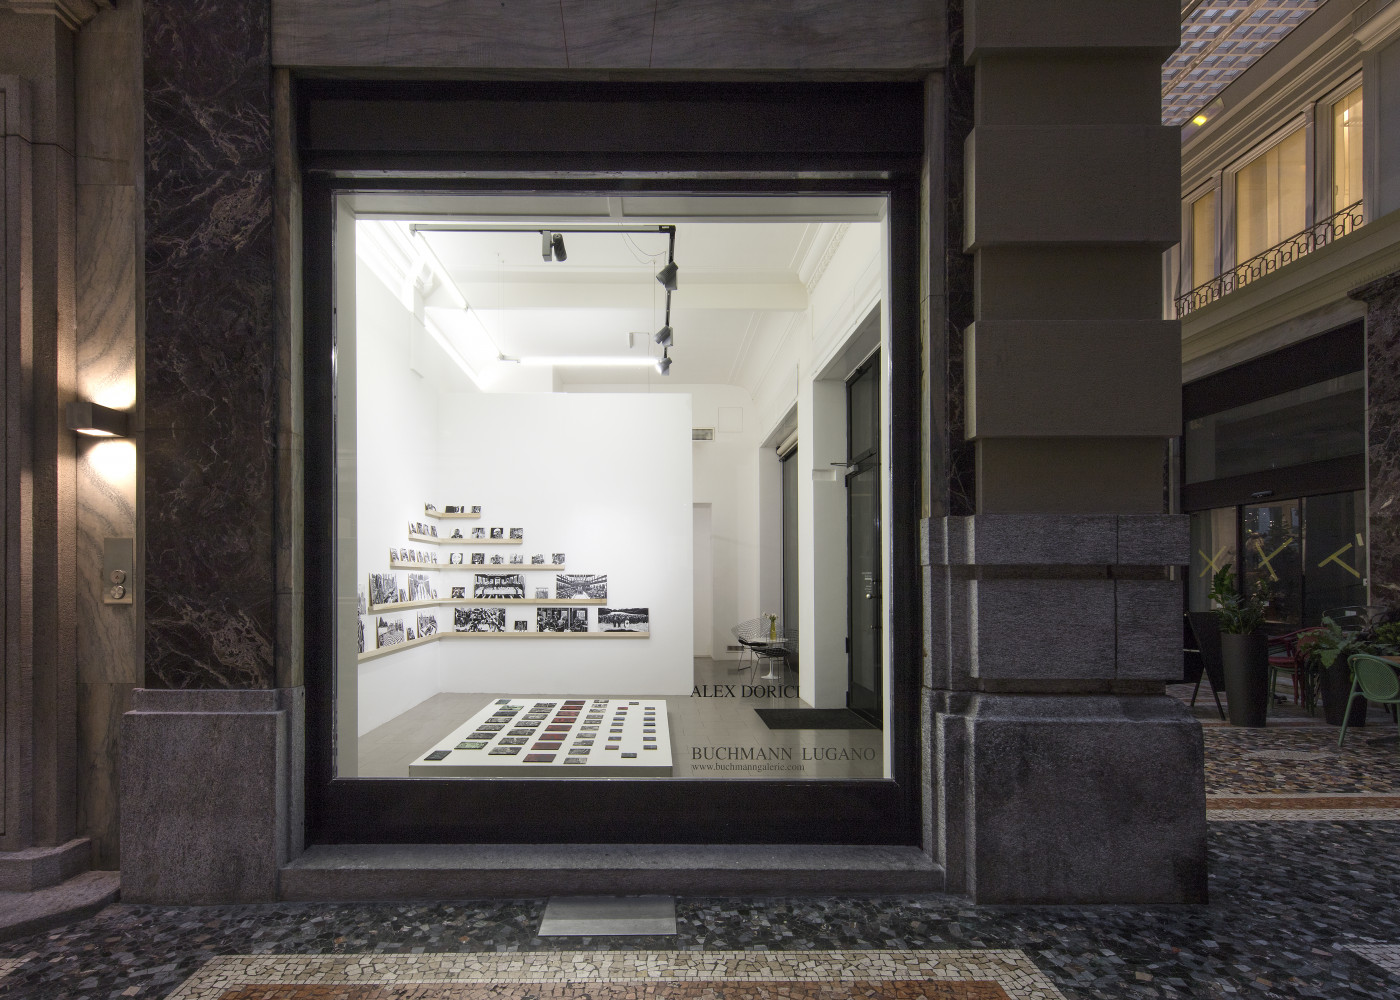 Alex Dorici, ‘Diario di Viaggio", 2020’, Installationsansicht, Buchmann Lugano